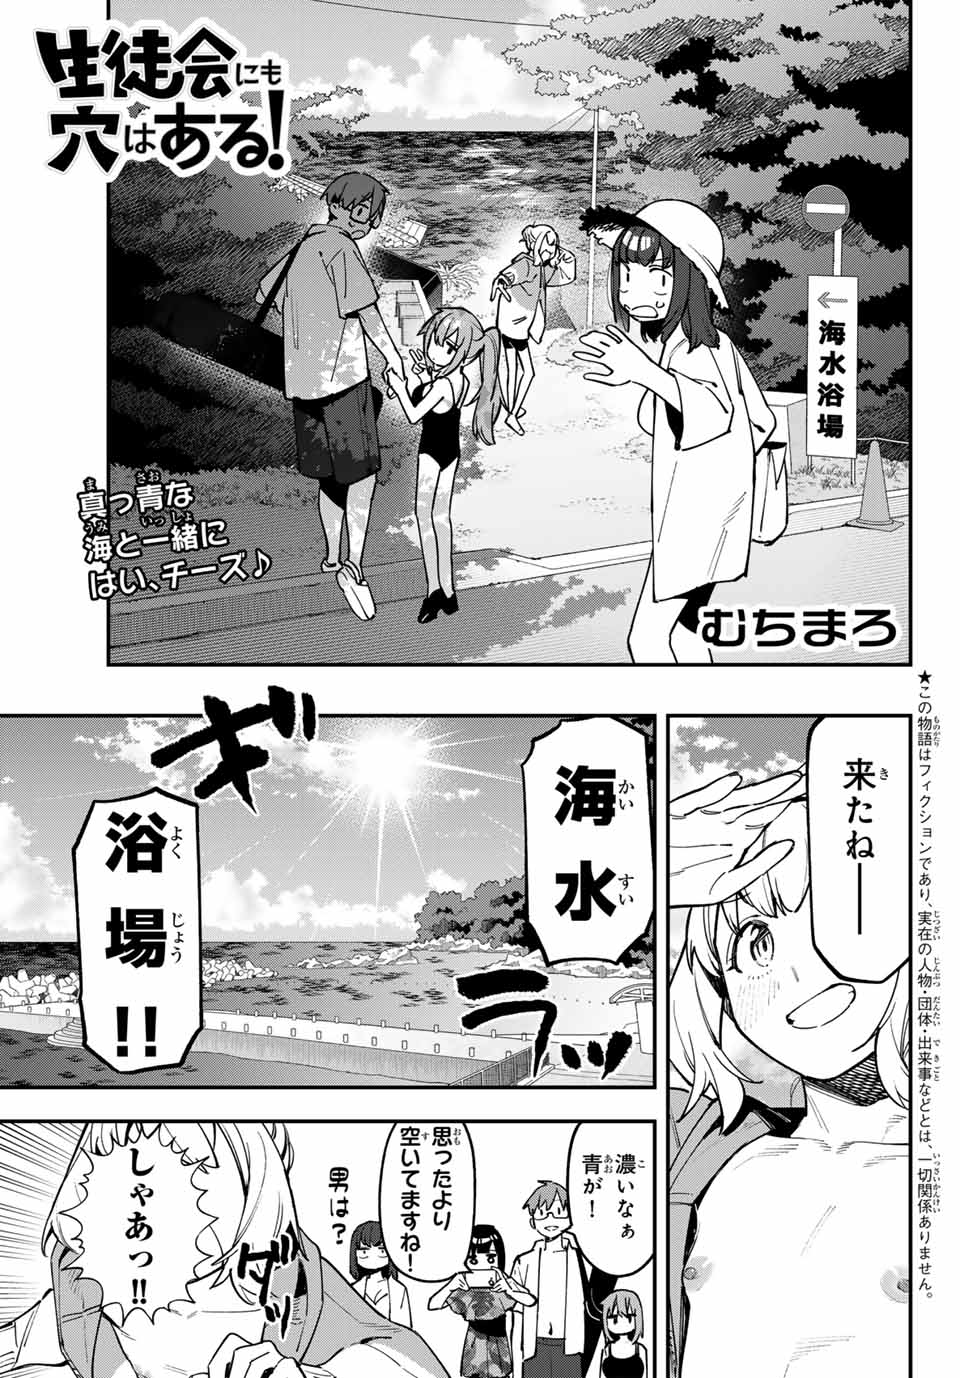 Seitokai mi mo Ana wa Aru! - Chapter 67 - Page 1